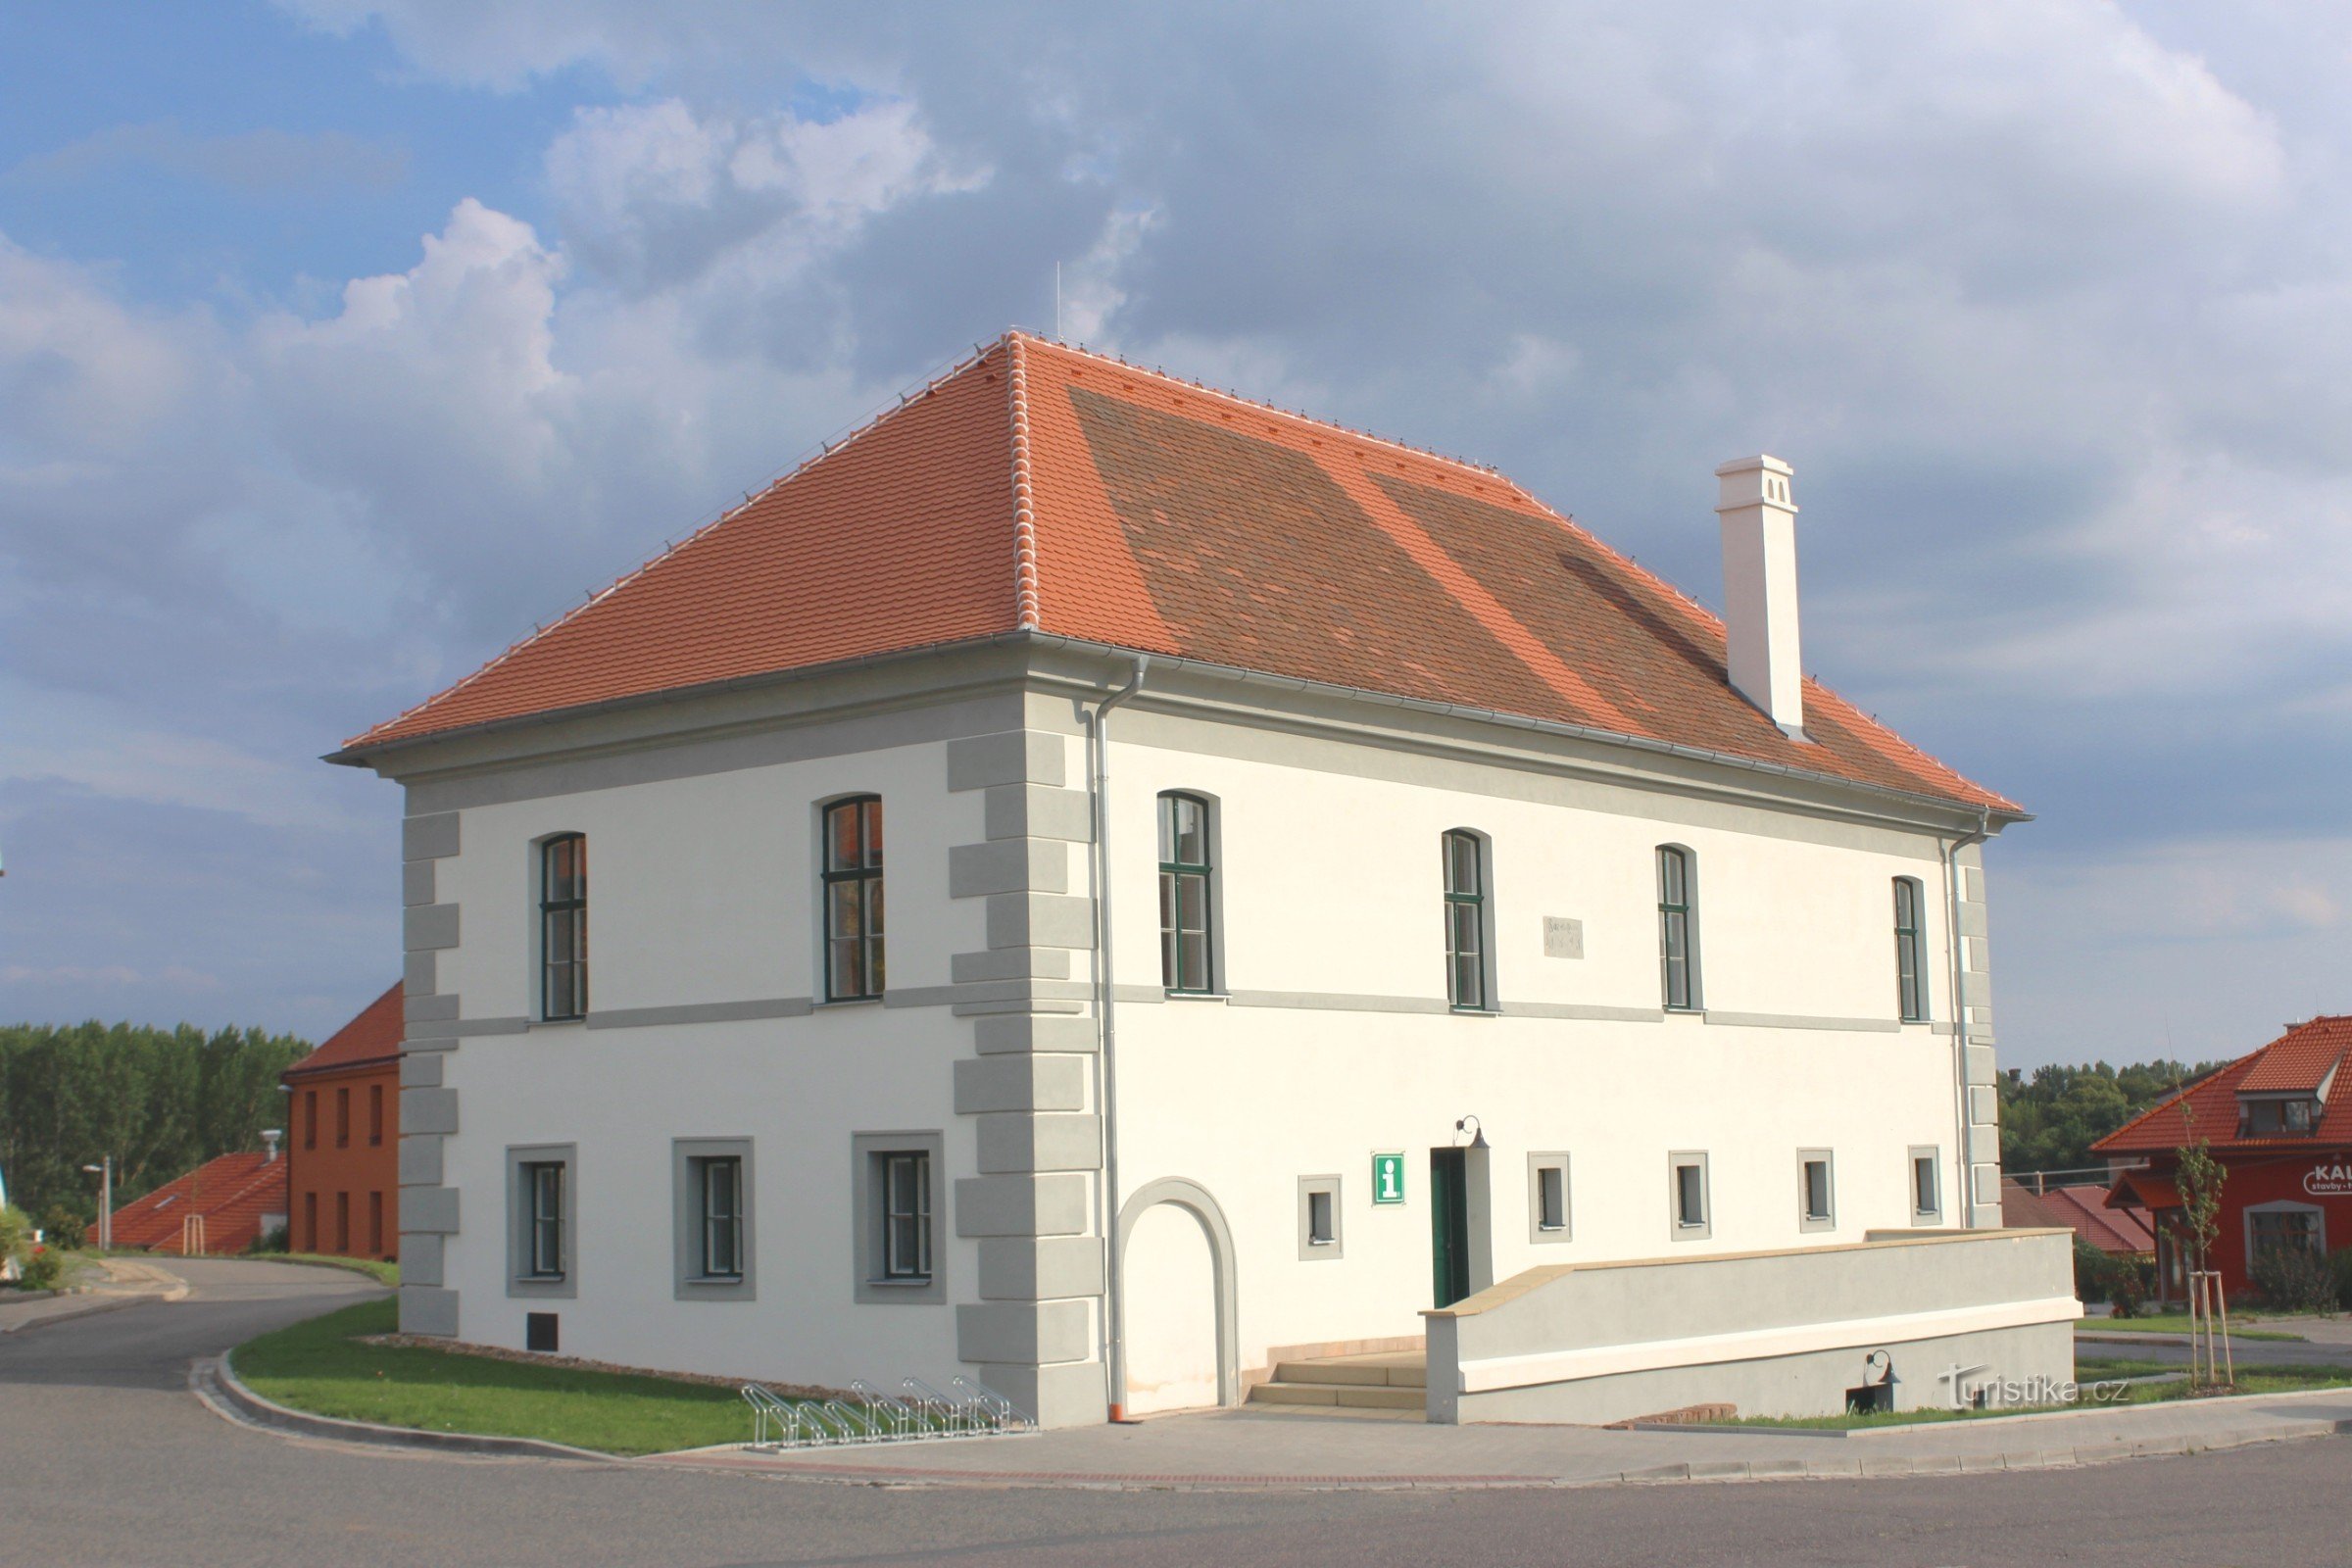 Drnholec - A fachada da Câmara Municipal